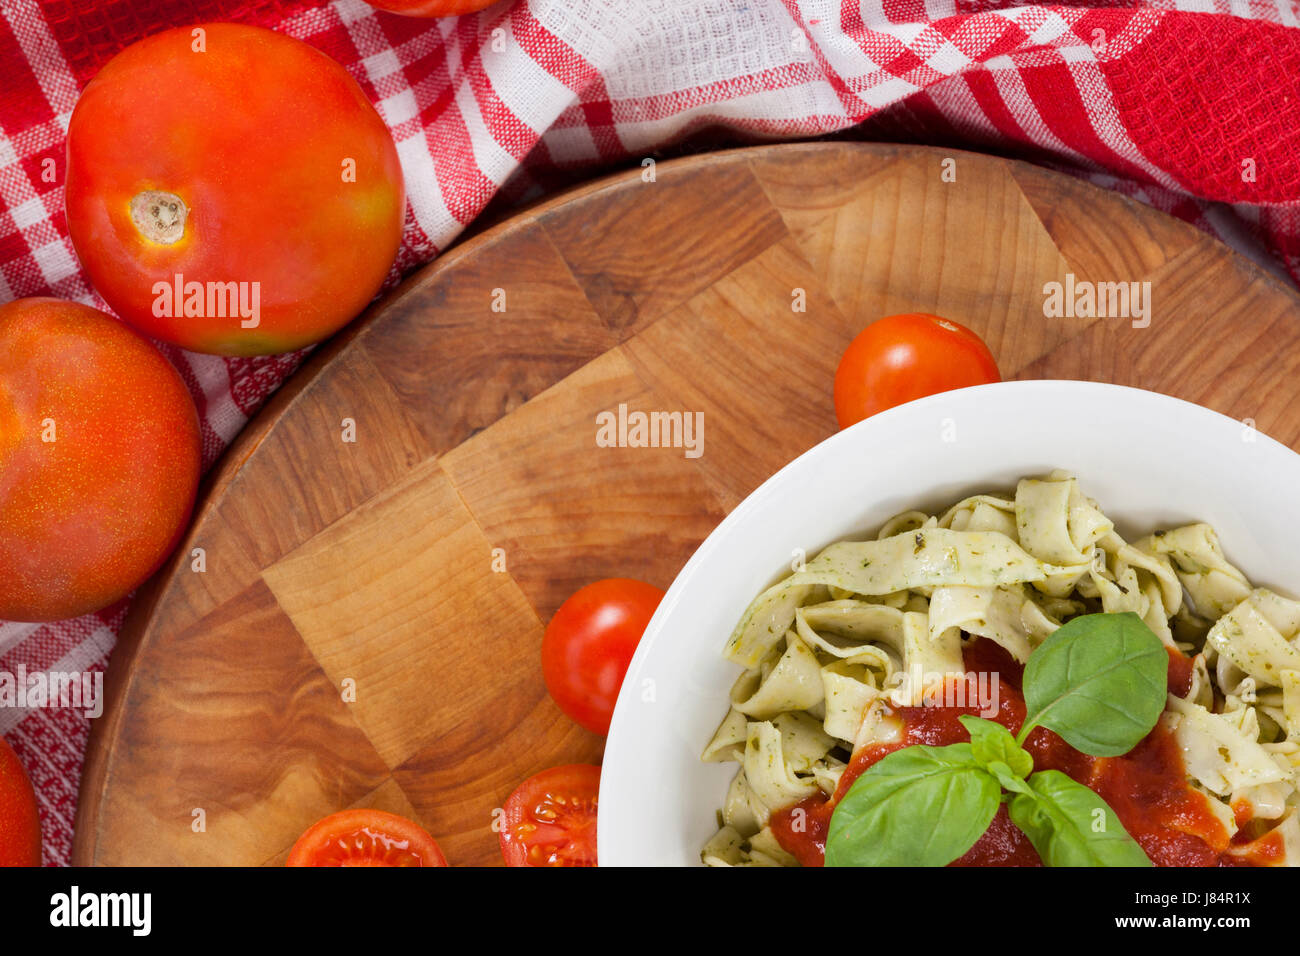 Nahaufnahme von Bandnudeln Nudeln mit Tomaten, Kräutern und Serviette Tuch Stockfoto